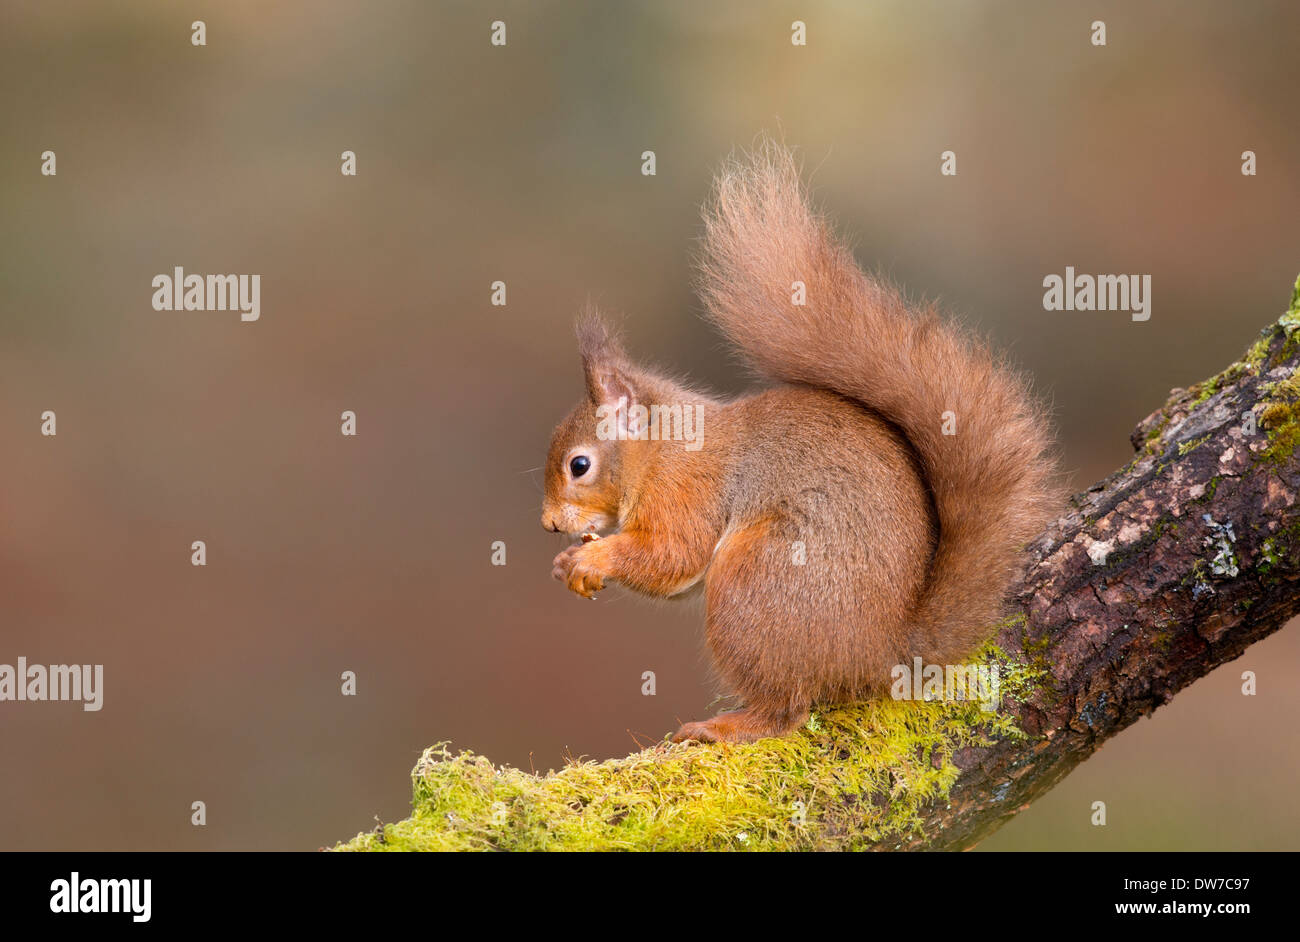 Un écureuil roux était assis sur une branche couverte de mousse sur le côté droit de l'image à gauche Banque D'Images